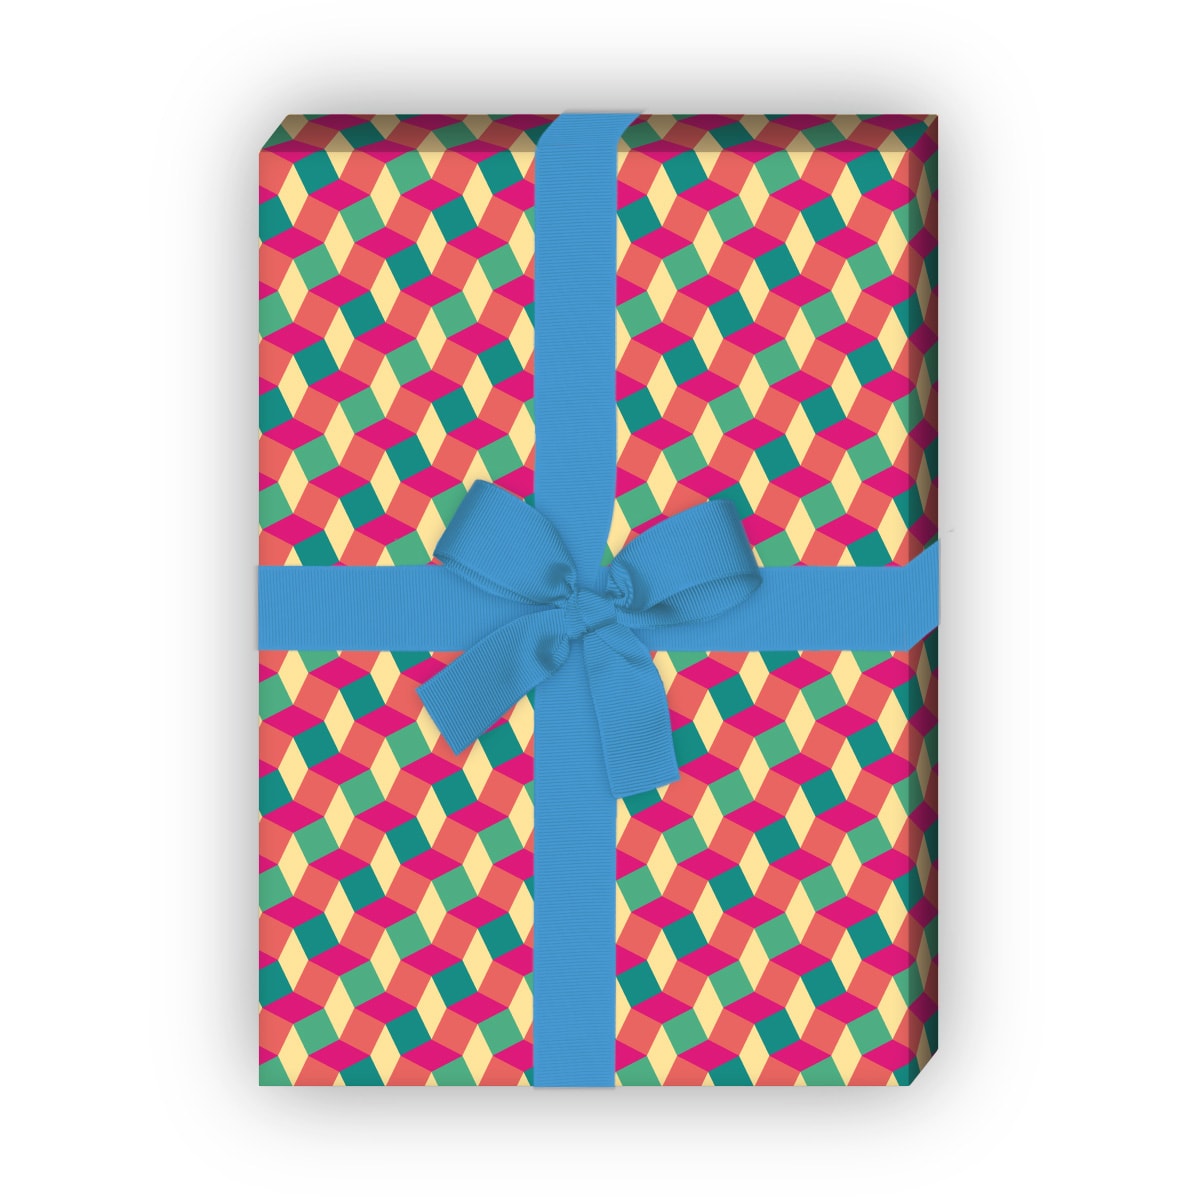 Kartenkaufrausch: Klein gemustertes Geschenkpapier im aus unserer Designer Papeterie in rosa